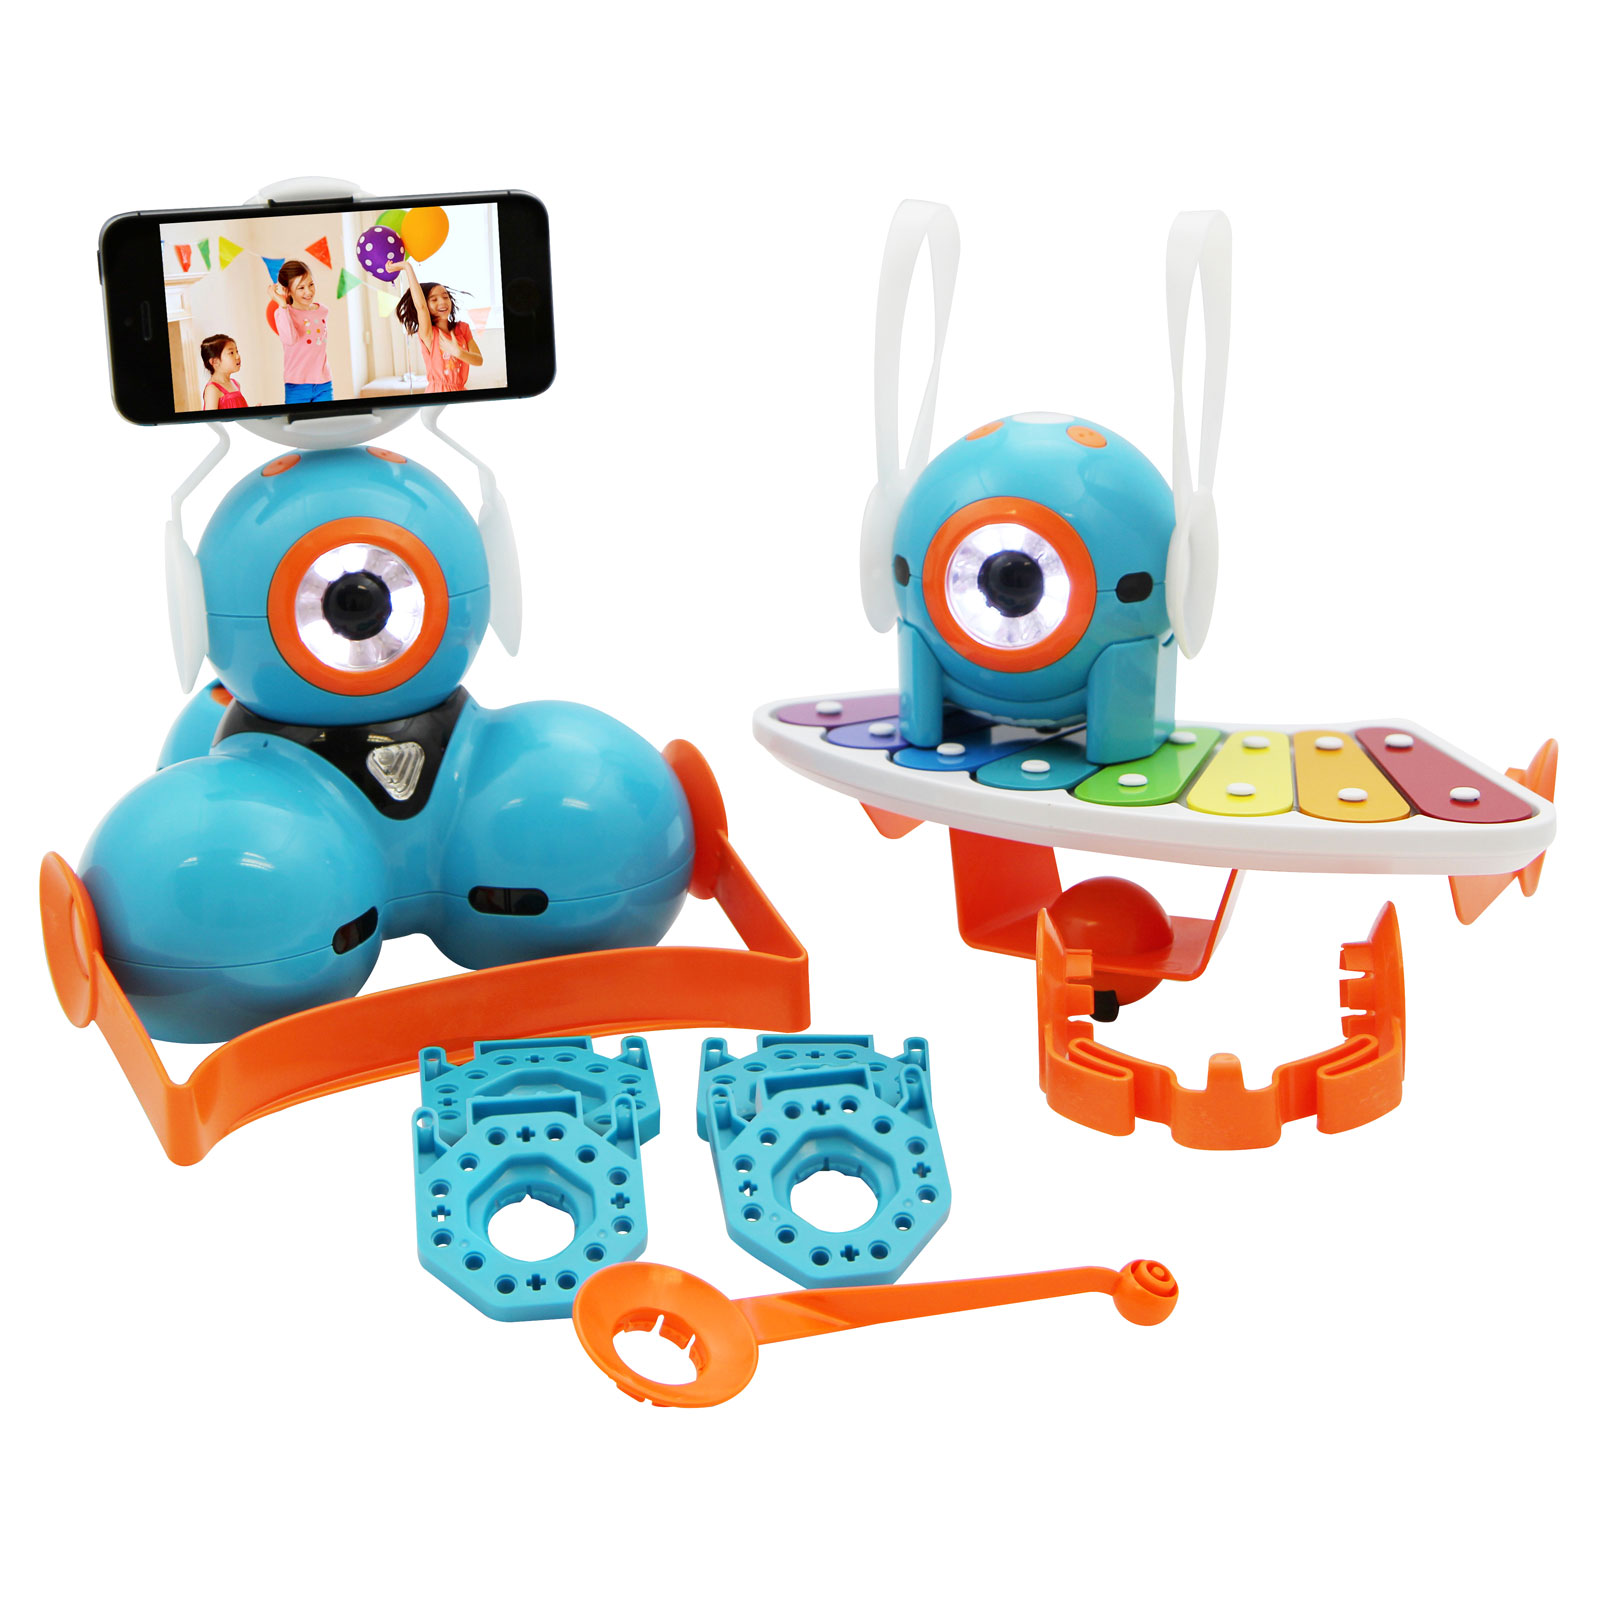 Wonder Workshop Dash & Dot Robot Wonder Pack Coding Robot for Kids